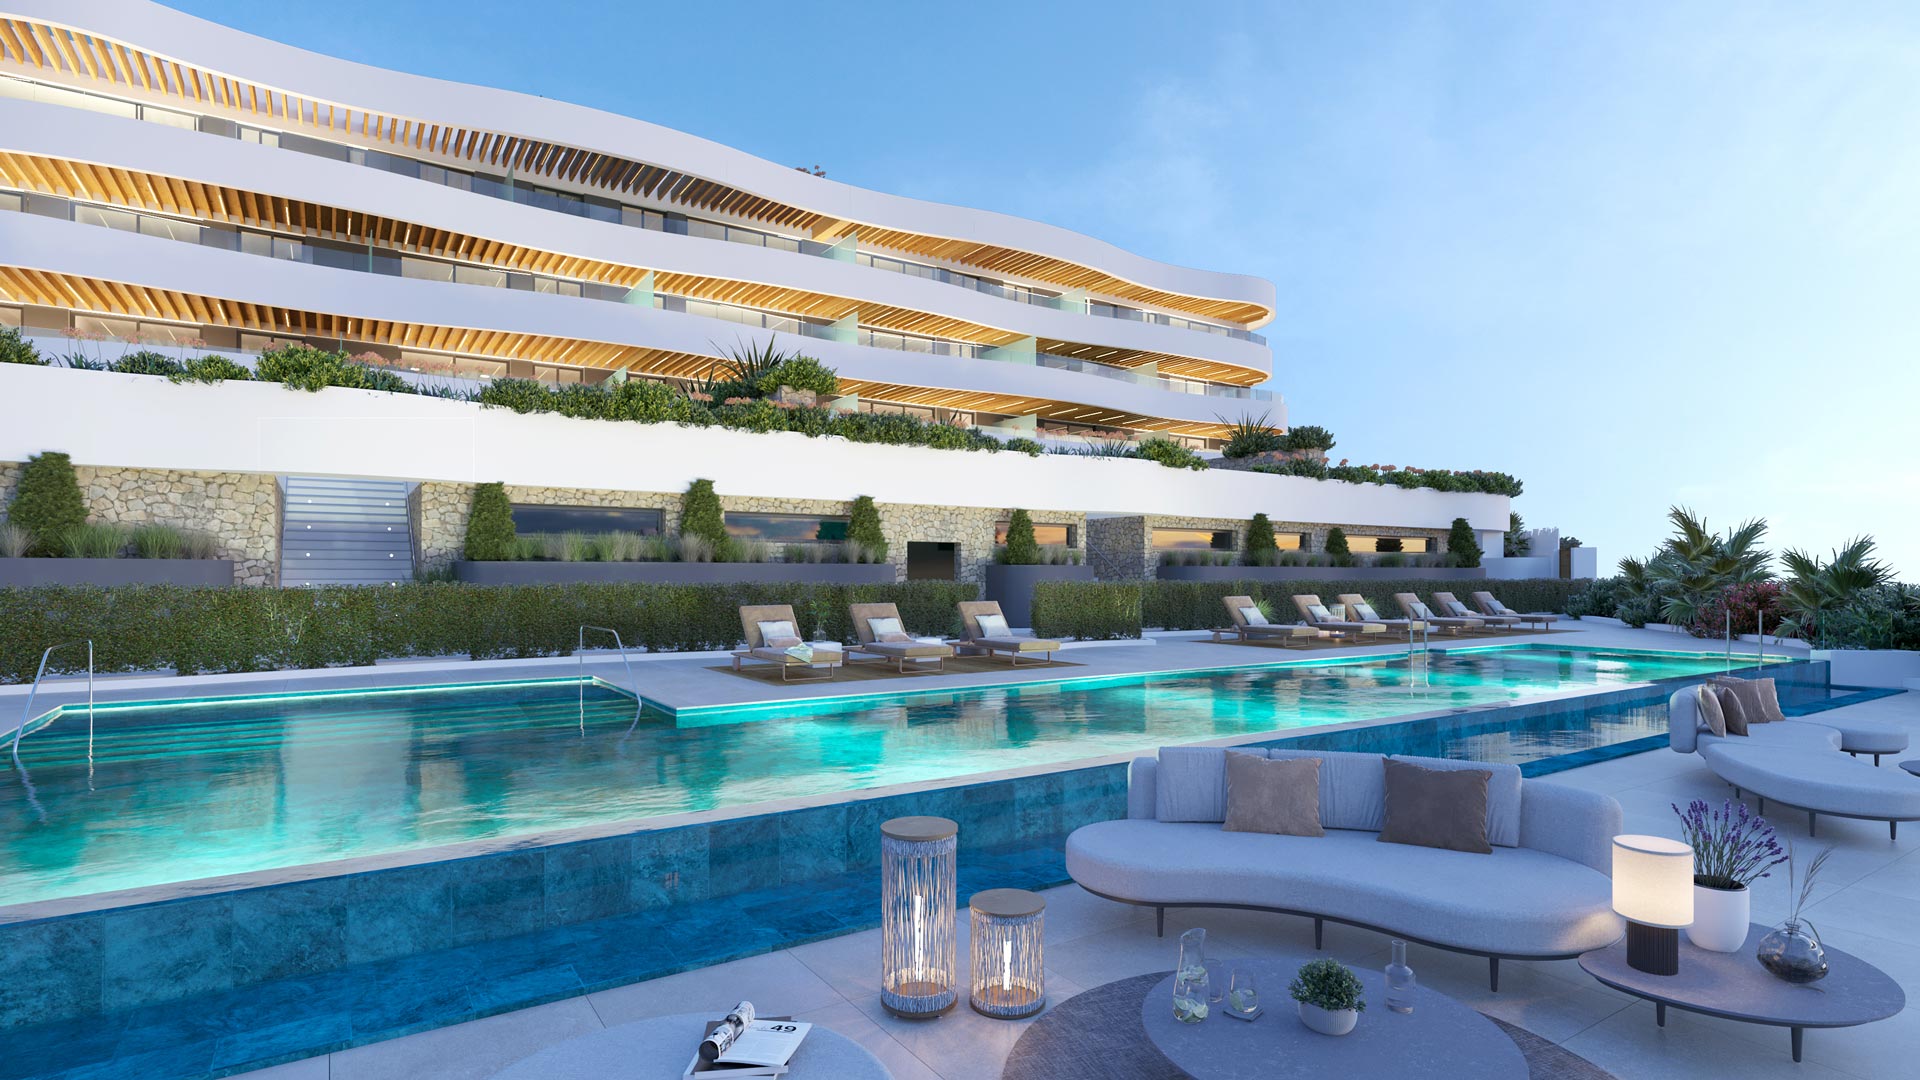 UNIQ Estates, goed nieuws voor wie op zoek is naar een woonst aan de Costa del Sol